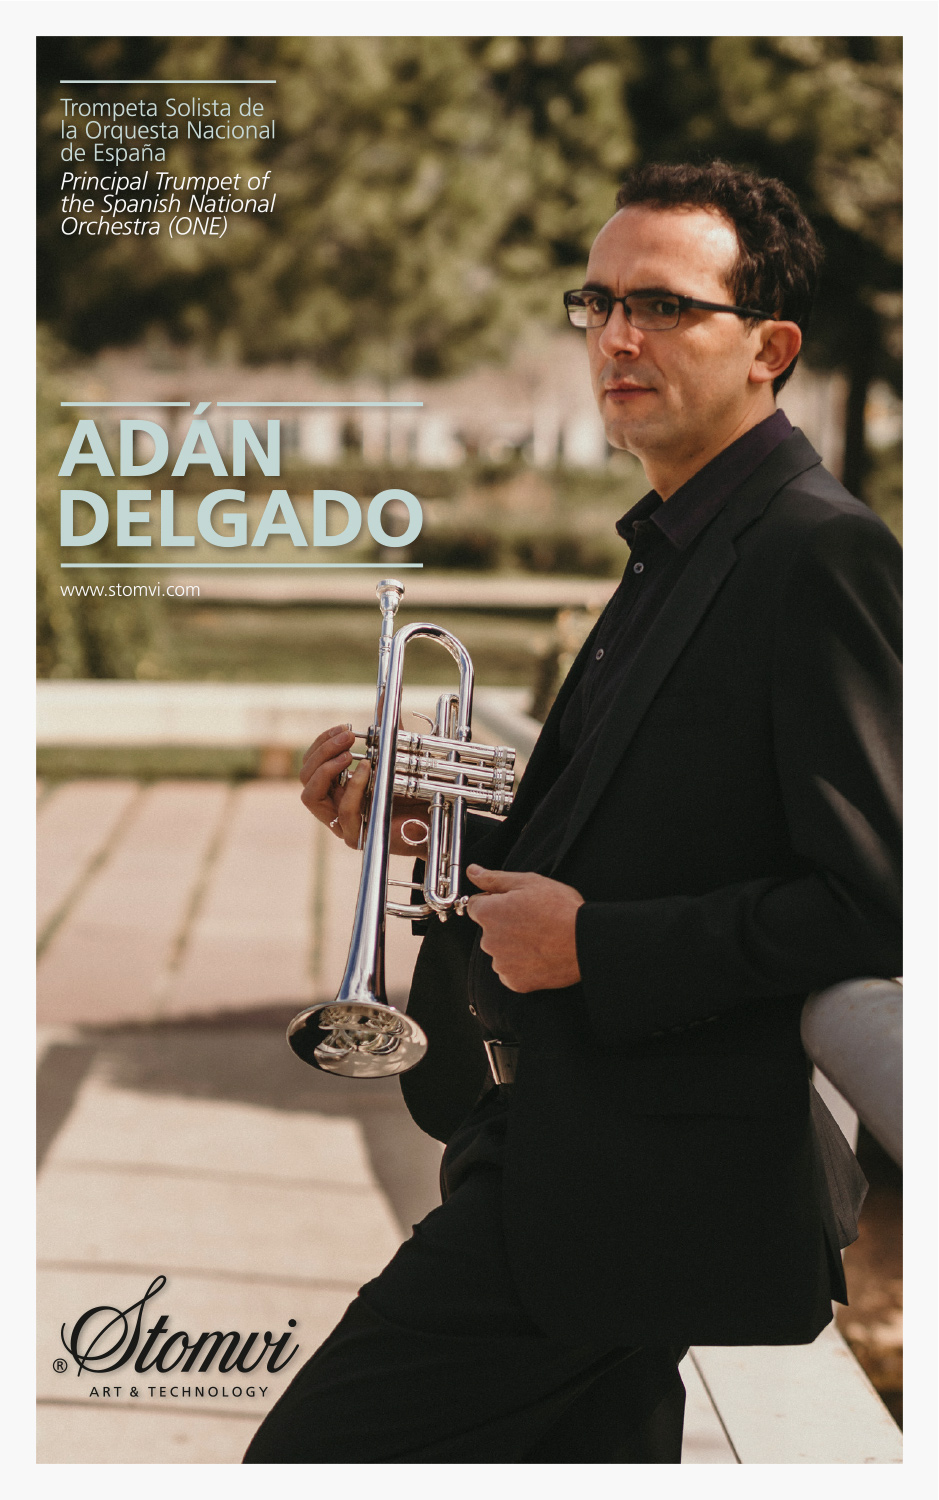 Adán Delgado